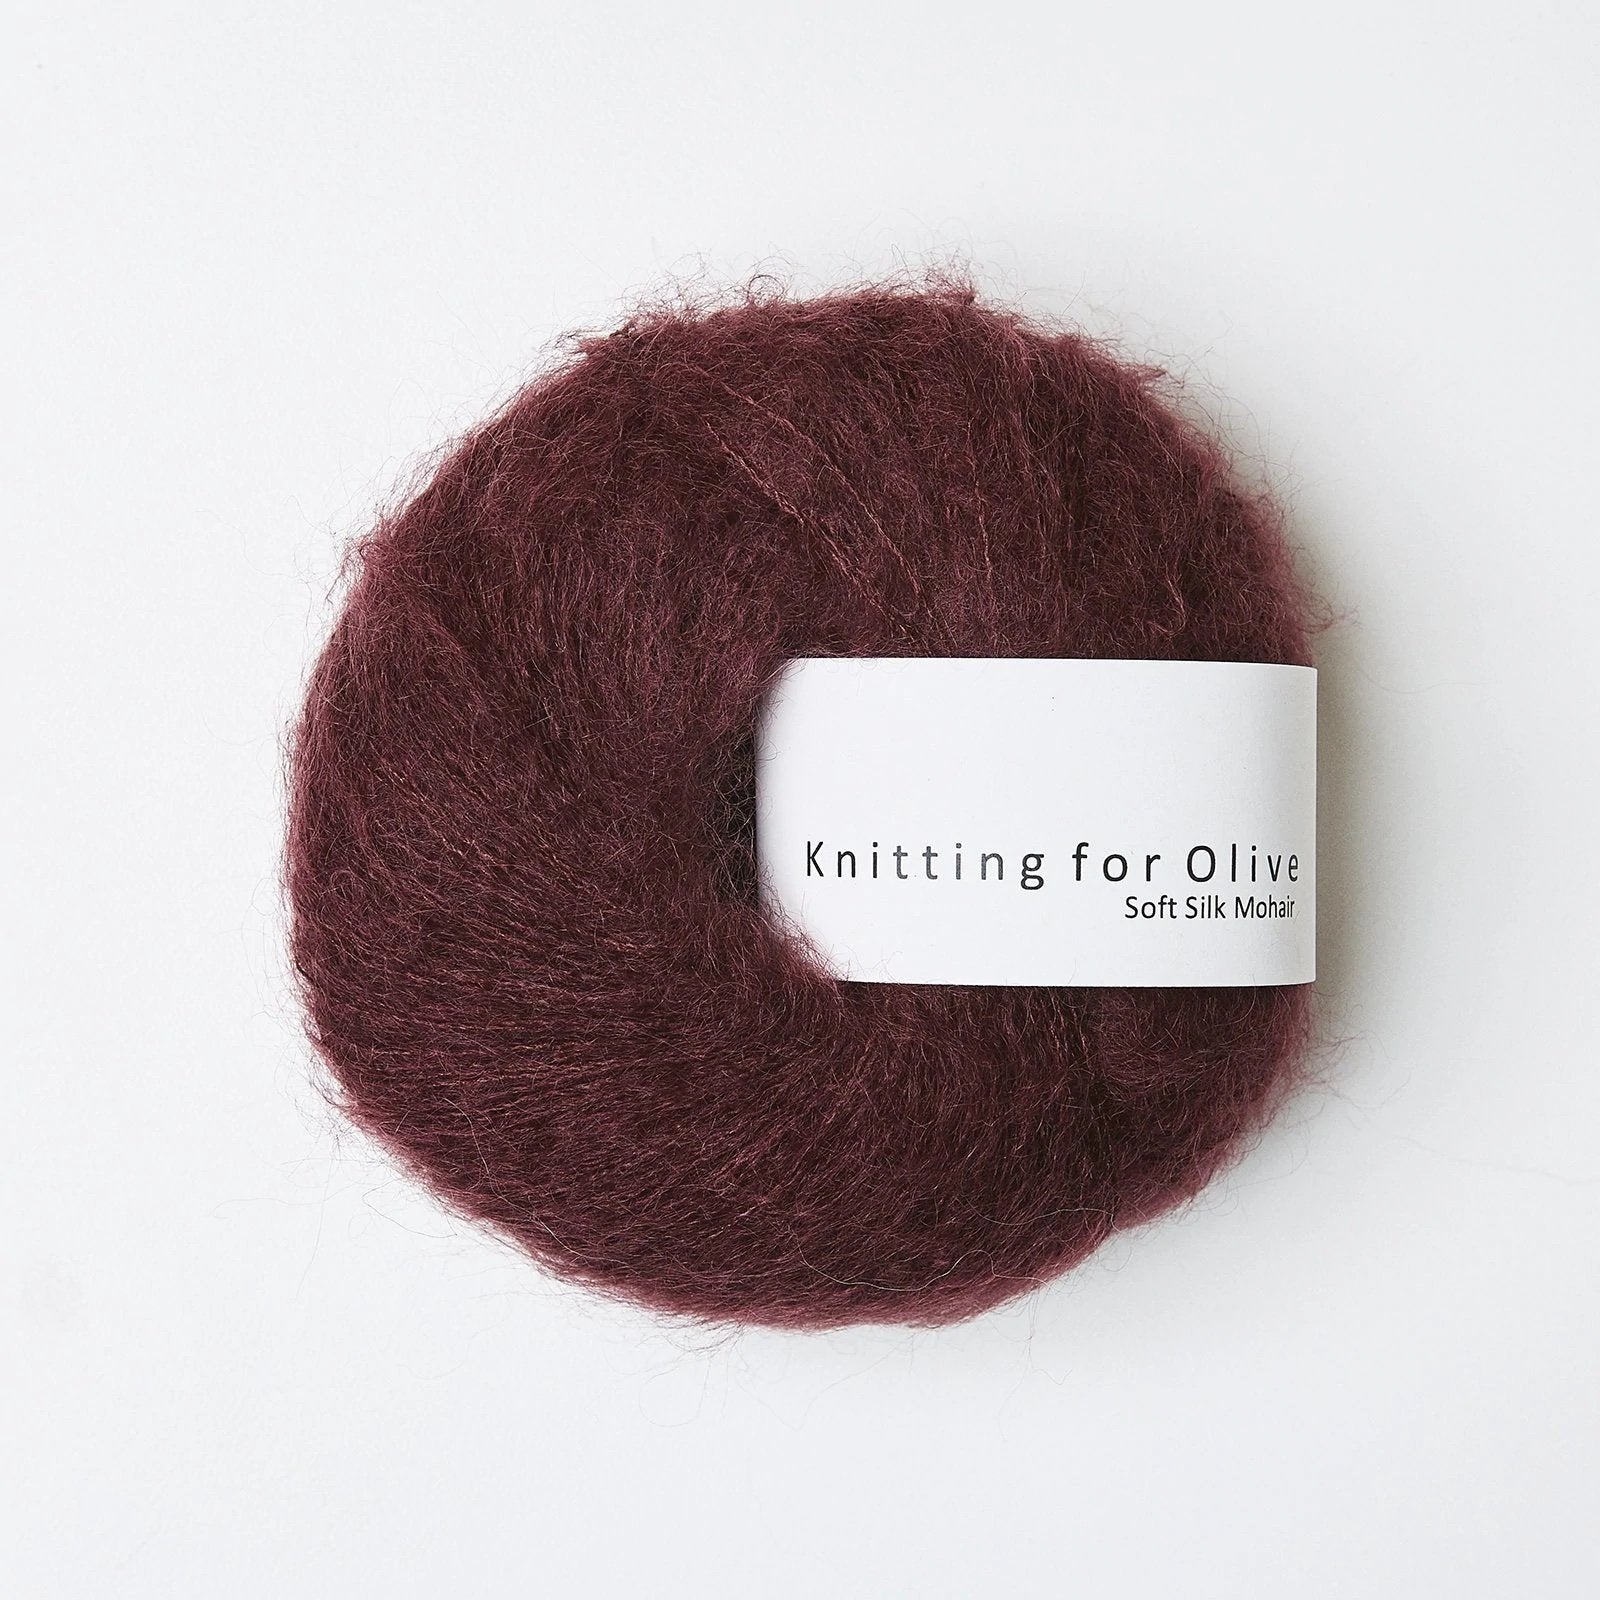 knitting for olive soft silk mohair 25g bordeaux